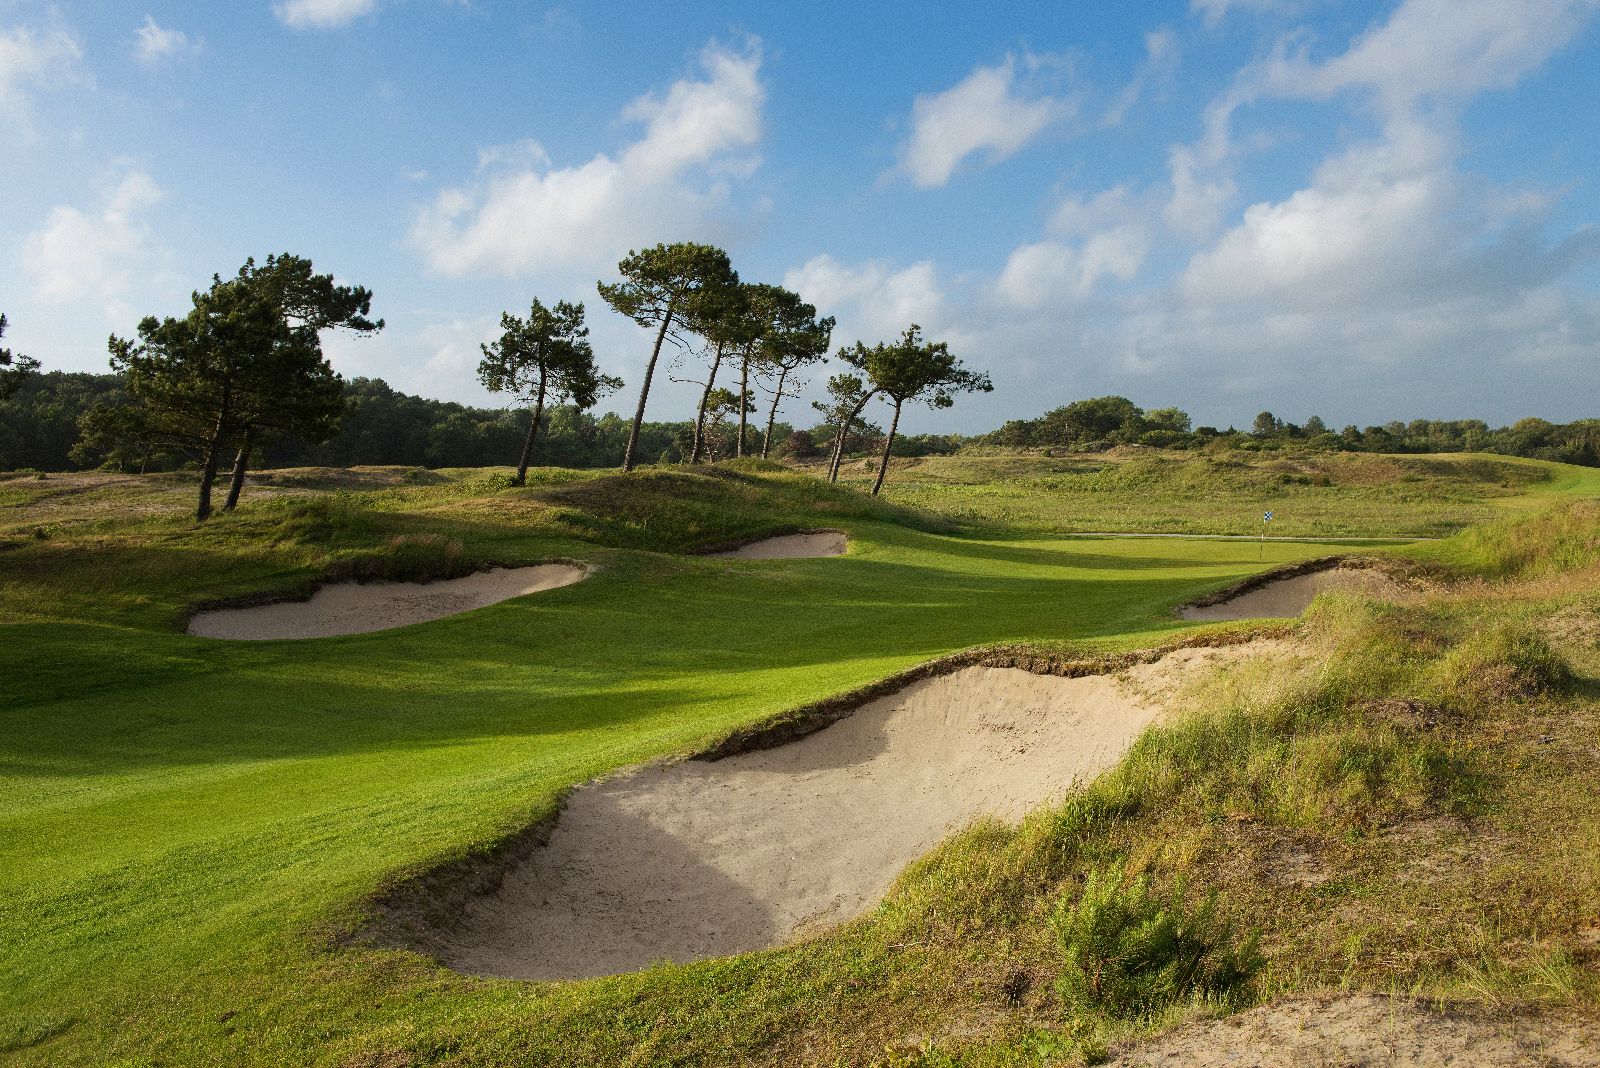 golf-expedition-golf-reizen-frankrijk-regio-pas-de-calais-le-manoir-hotel-golfbaan-met-bunker-in-natuurlijke-omgeving.jpg